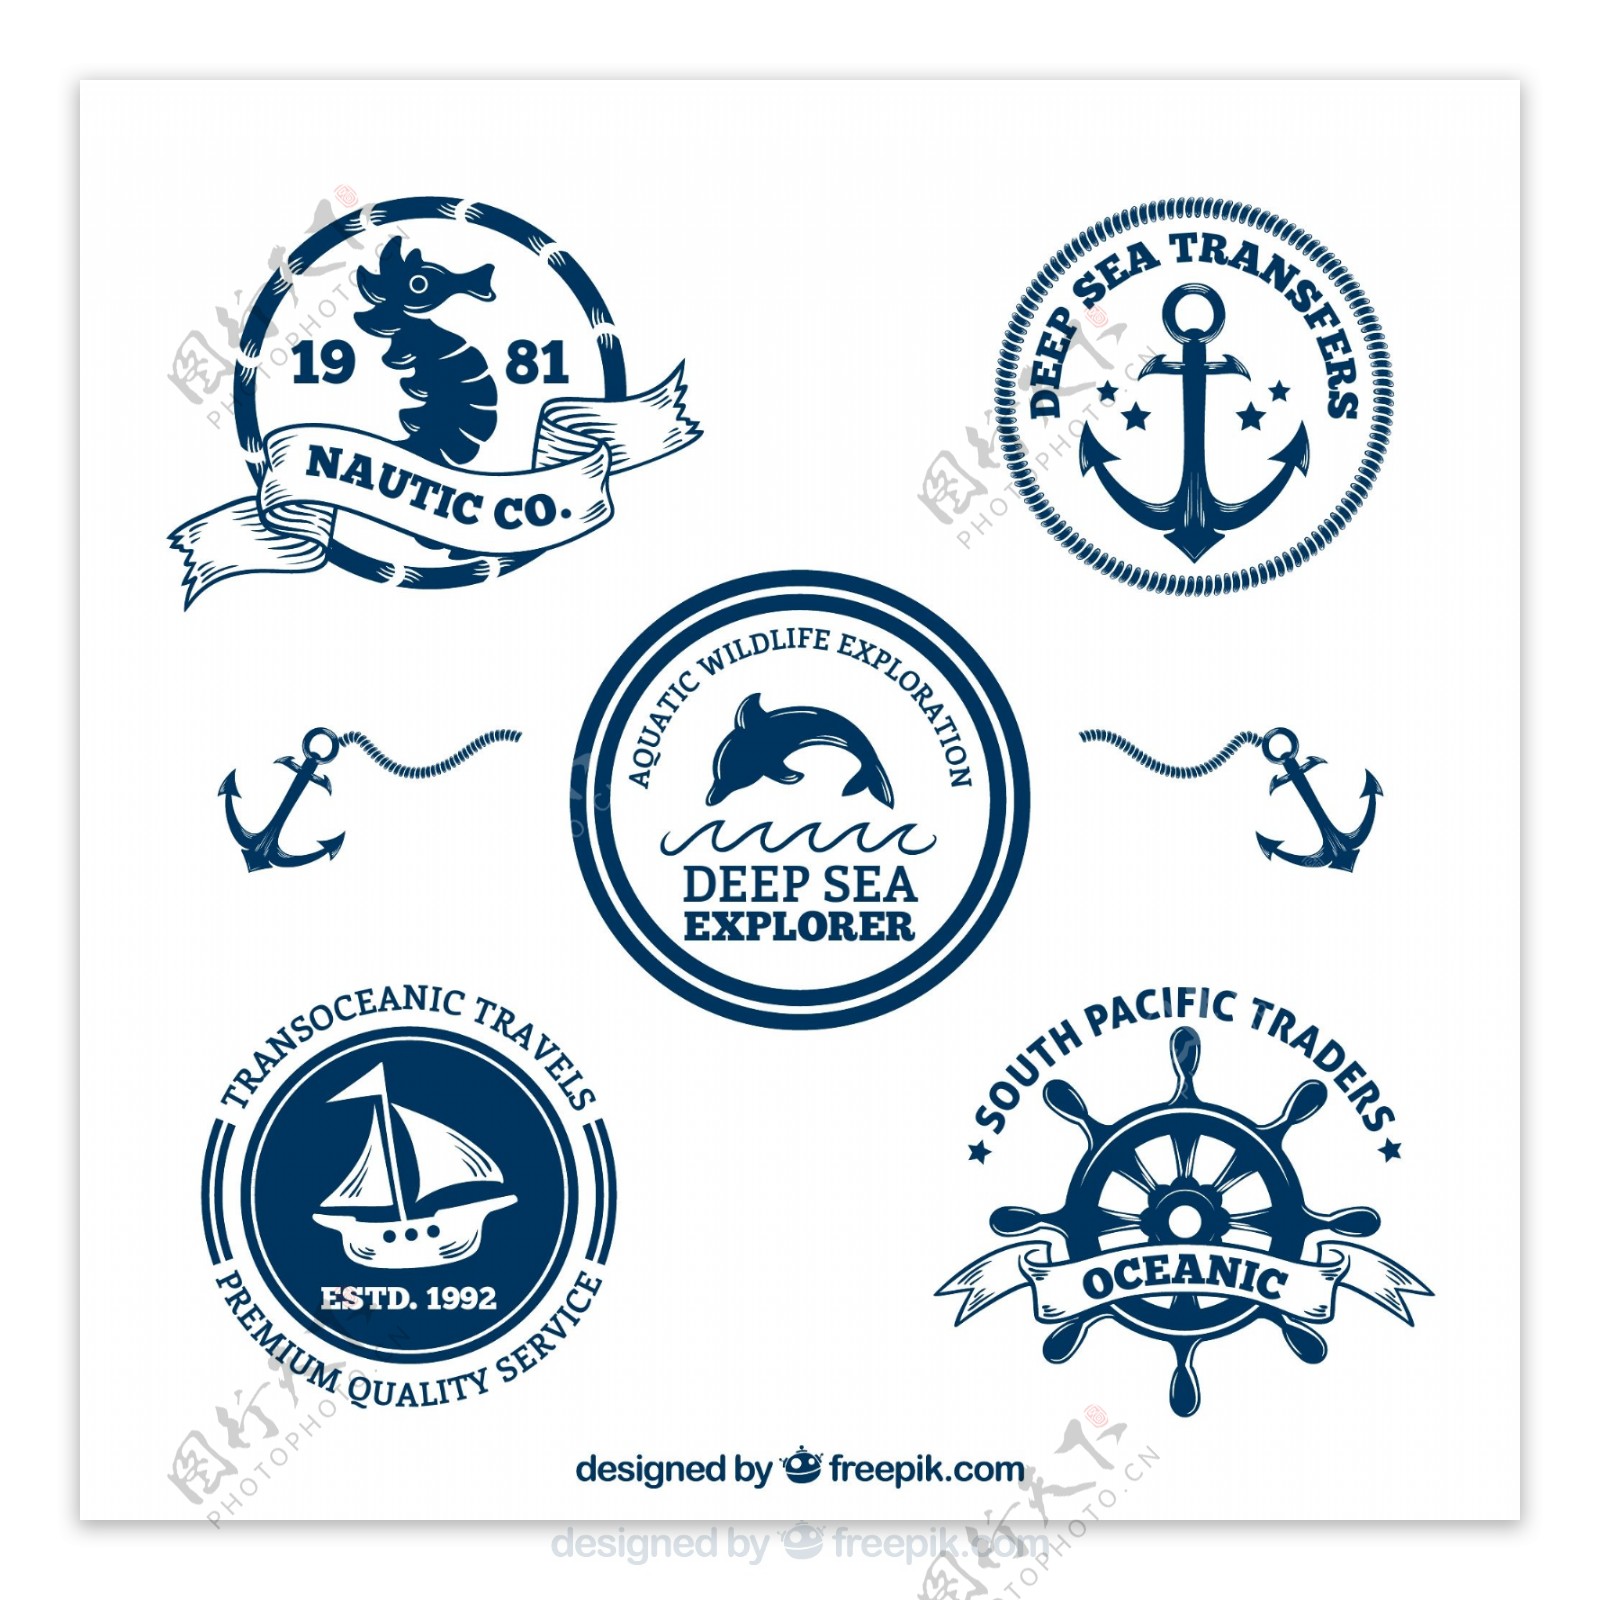 5款深蓝色航海徽章矢量素材